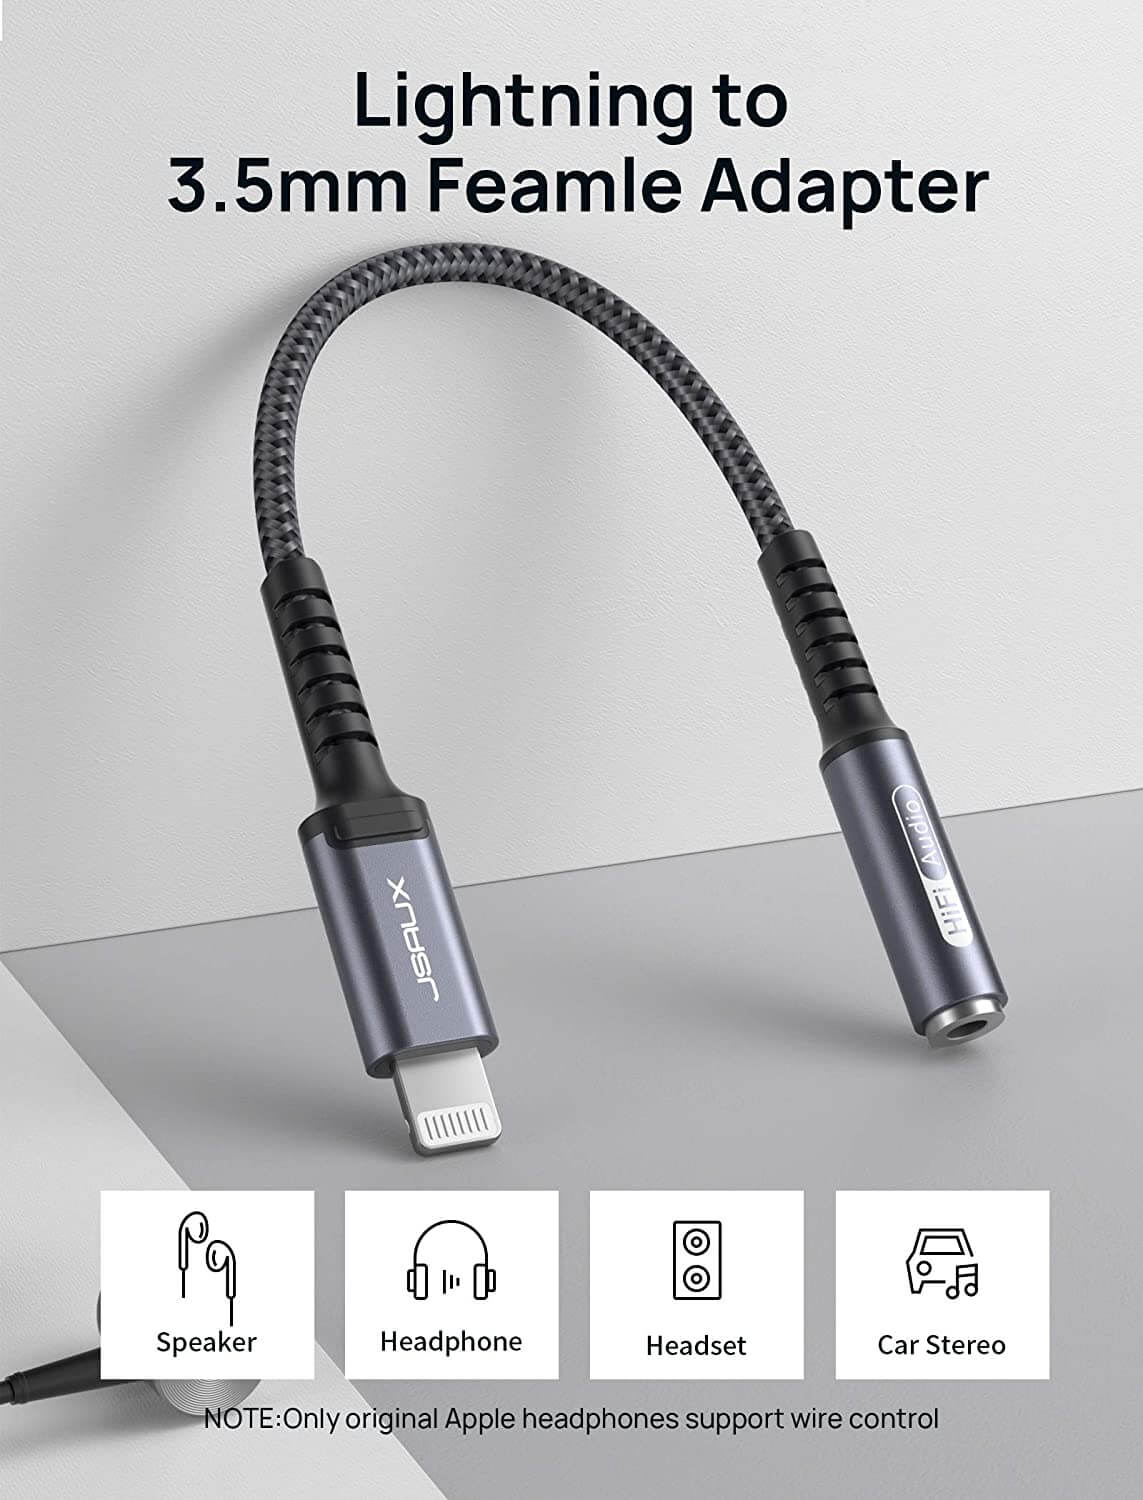 Lightning to 3.5mm Audio Adapter